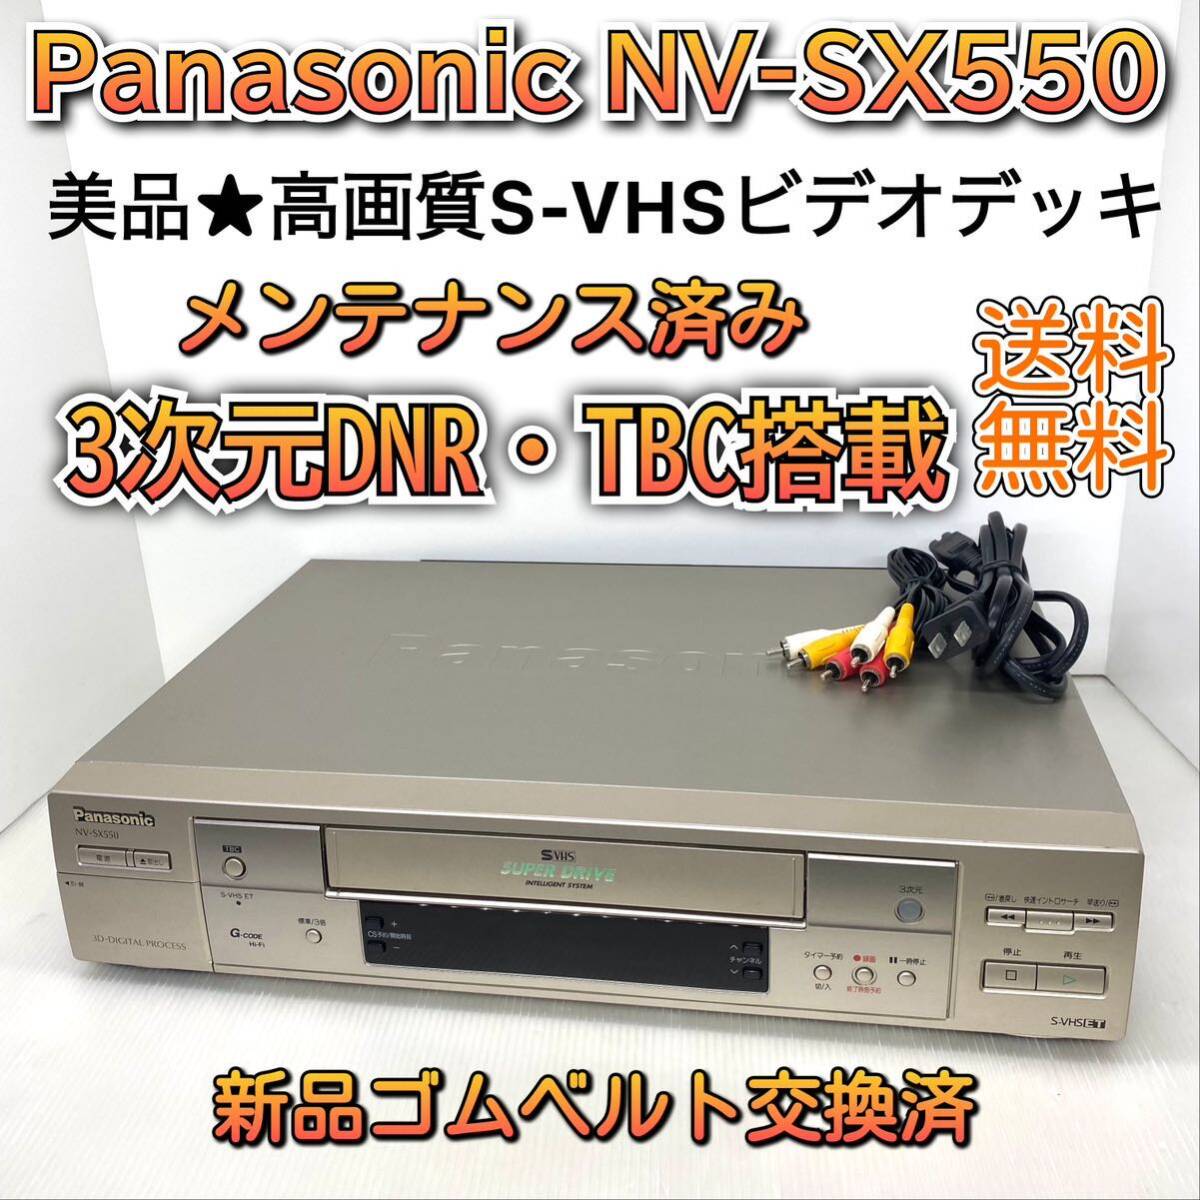 【メンテナンス済み】高画質 パナソニック S-VHSビデオデッキ NV-SX550 新品ゴムベルト交換済み 3次元DNR TBC搭載 古いVHSもキレイに再生！_画像1